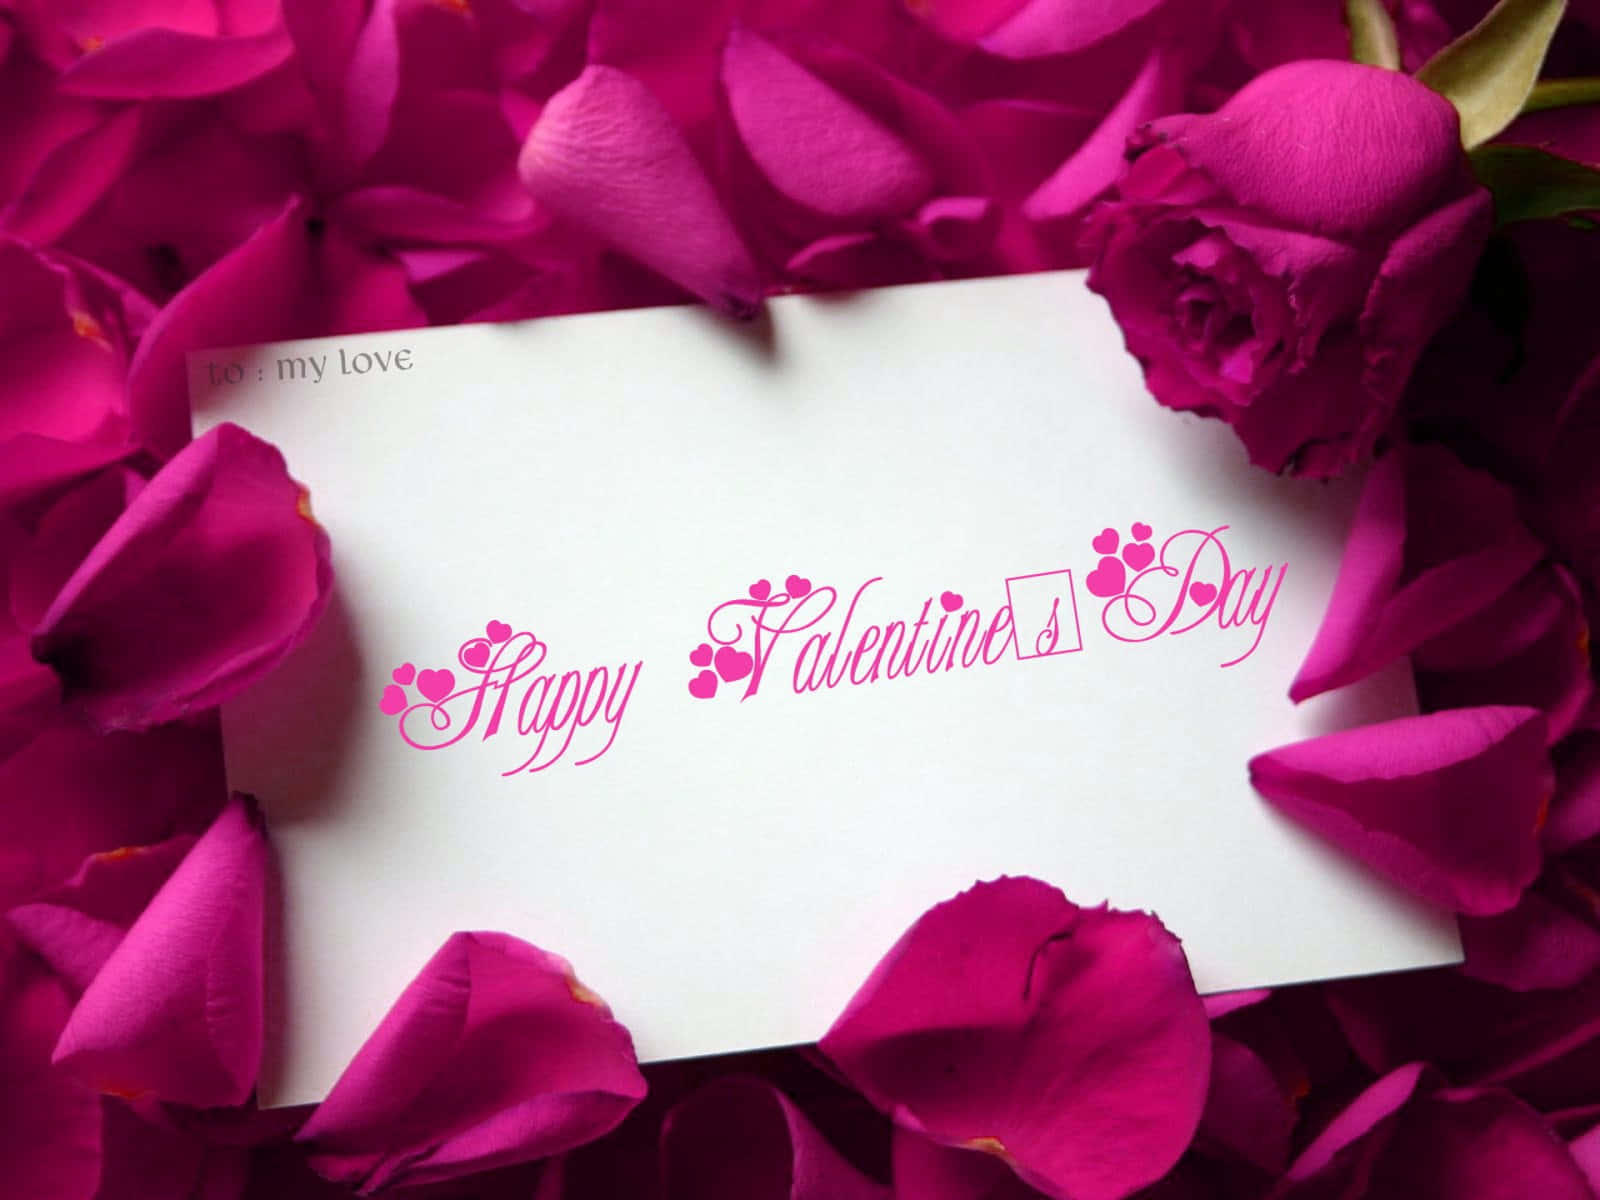 Zeigensie Ihrem Liebsten Oder Ihrer Liebsten An Diesem Valentinstag Etwas Liebe Mit Einem Niedlichen Und Besonderen Geschenk! Wallpaper